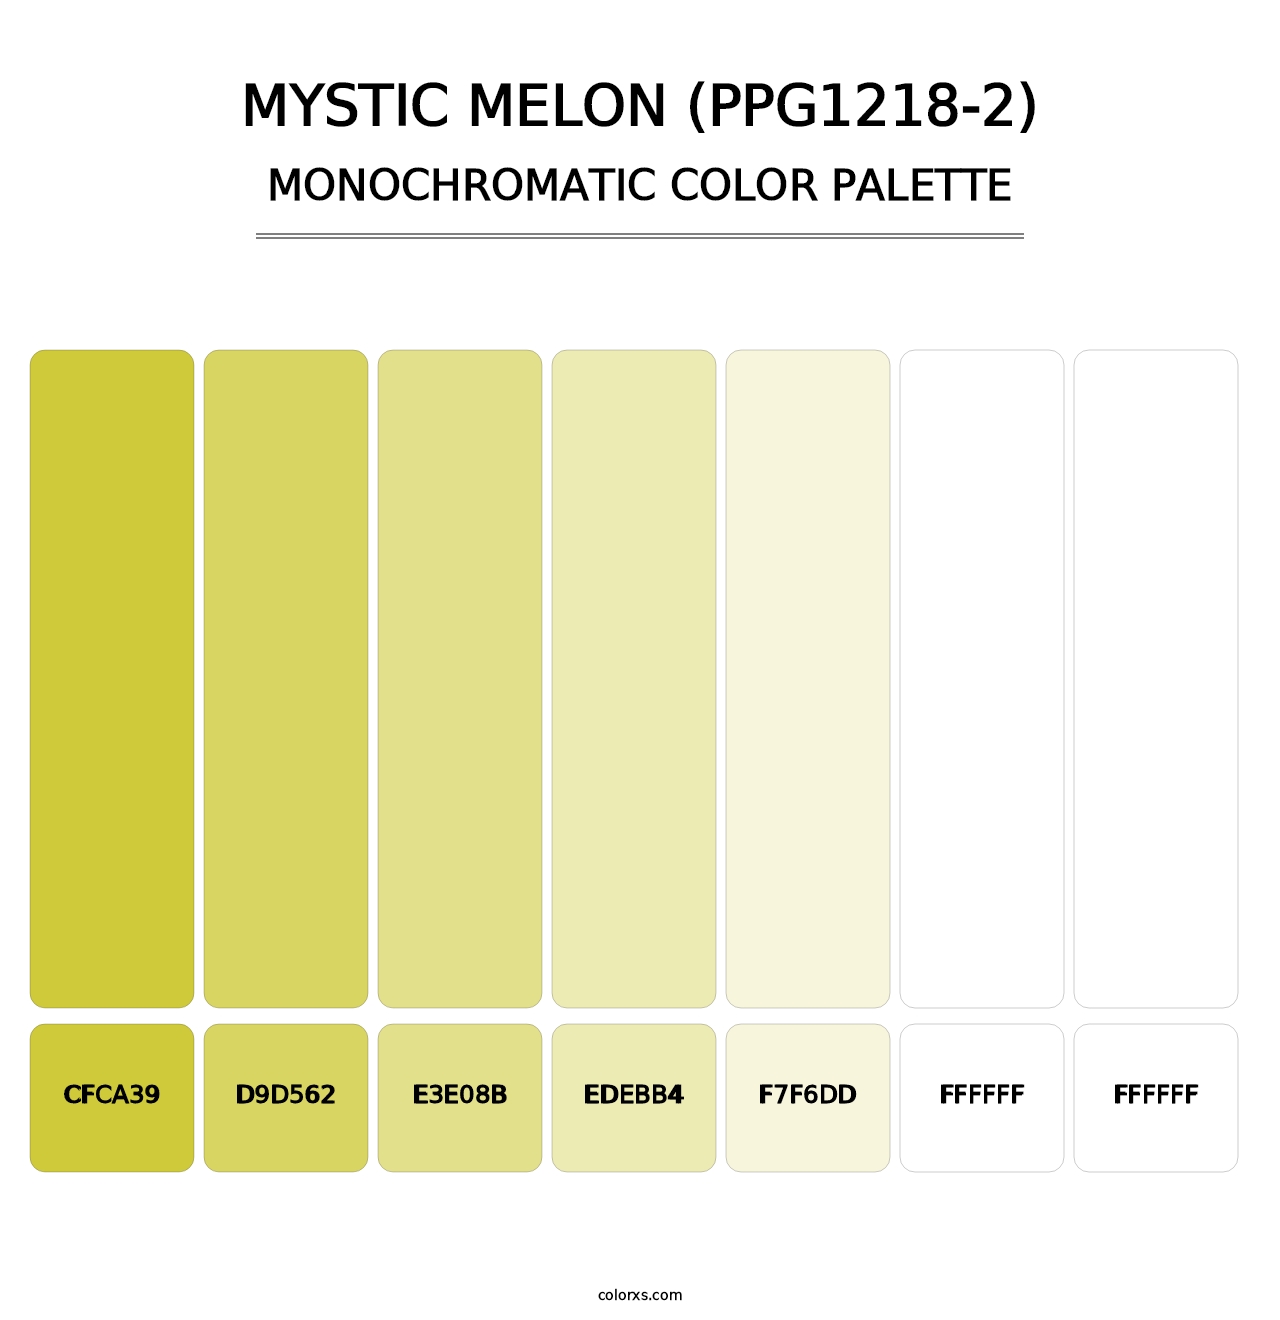 Mystic Melon (PPG1218-2) - Monochromatic Color Palette